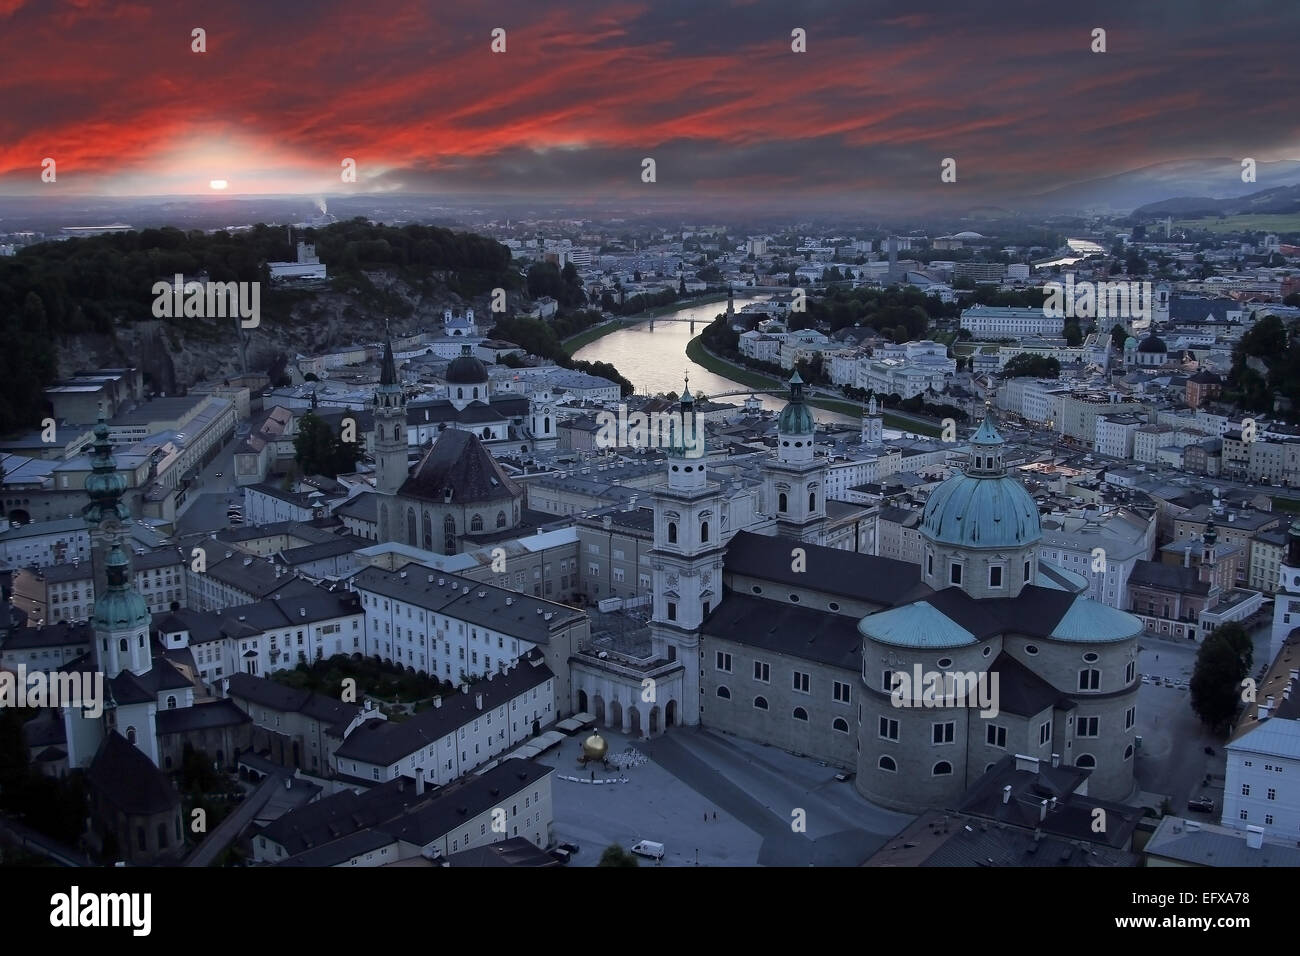 Sonnenuntergang Blick auf Salzburg. Altstadt mit der Kathedrale, Kapitelplatz und Sphaera Statue (Mozartkugel) im Vordergrund. Stockfoto